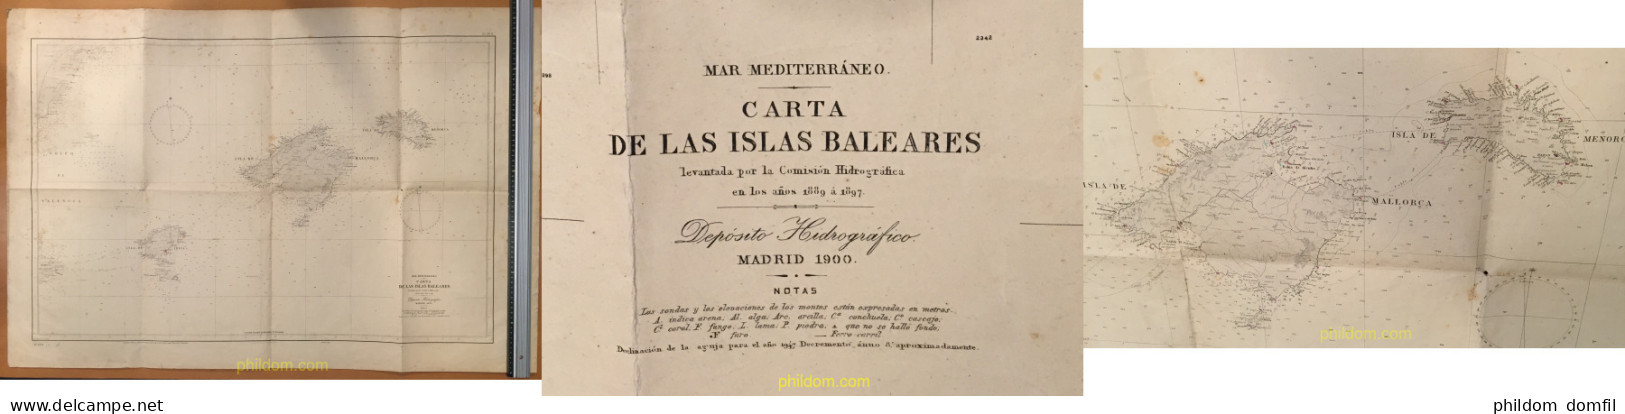 PLANO MAPA CARTA DE LAS ISLAS BALEARES 1900 - Europe